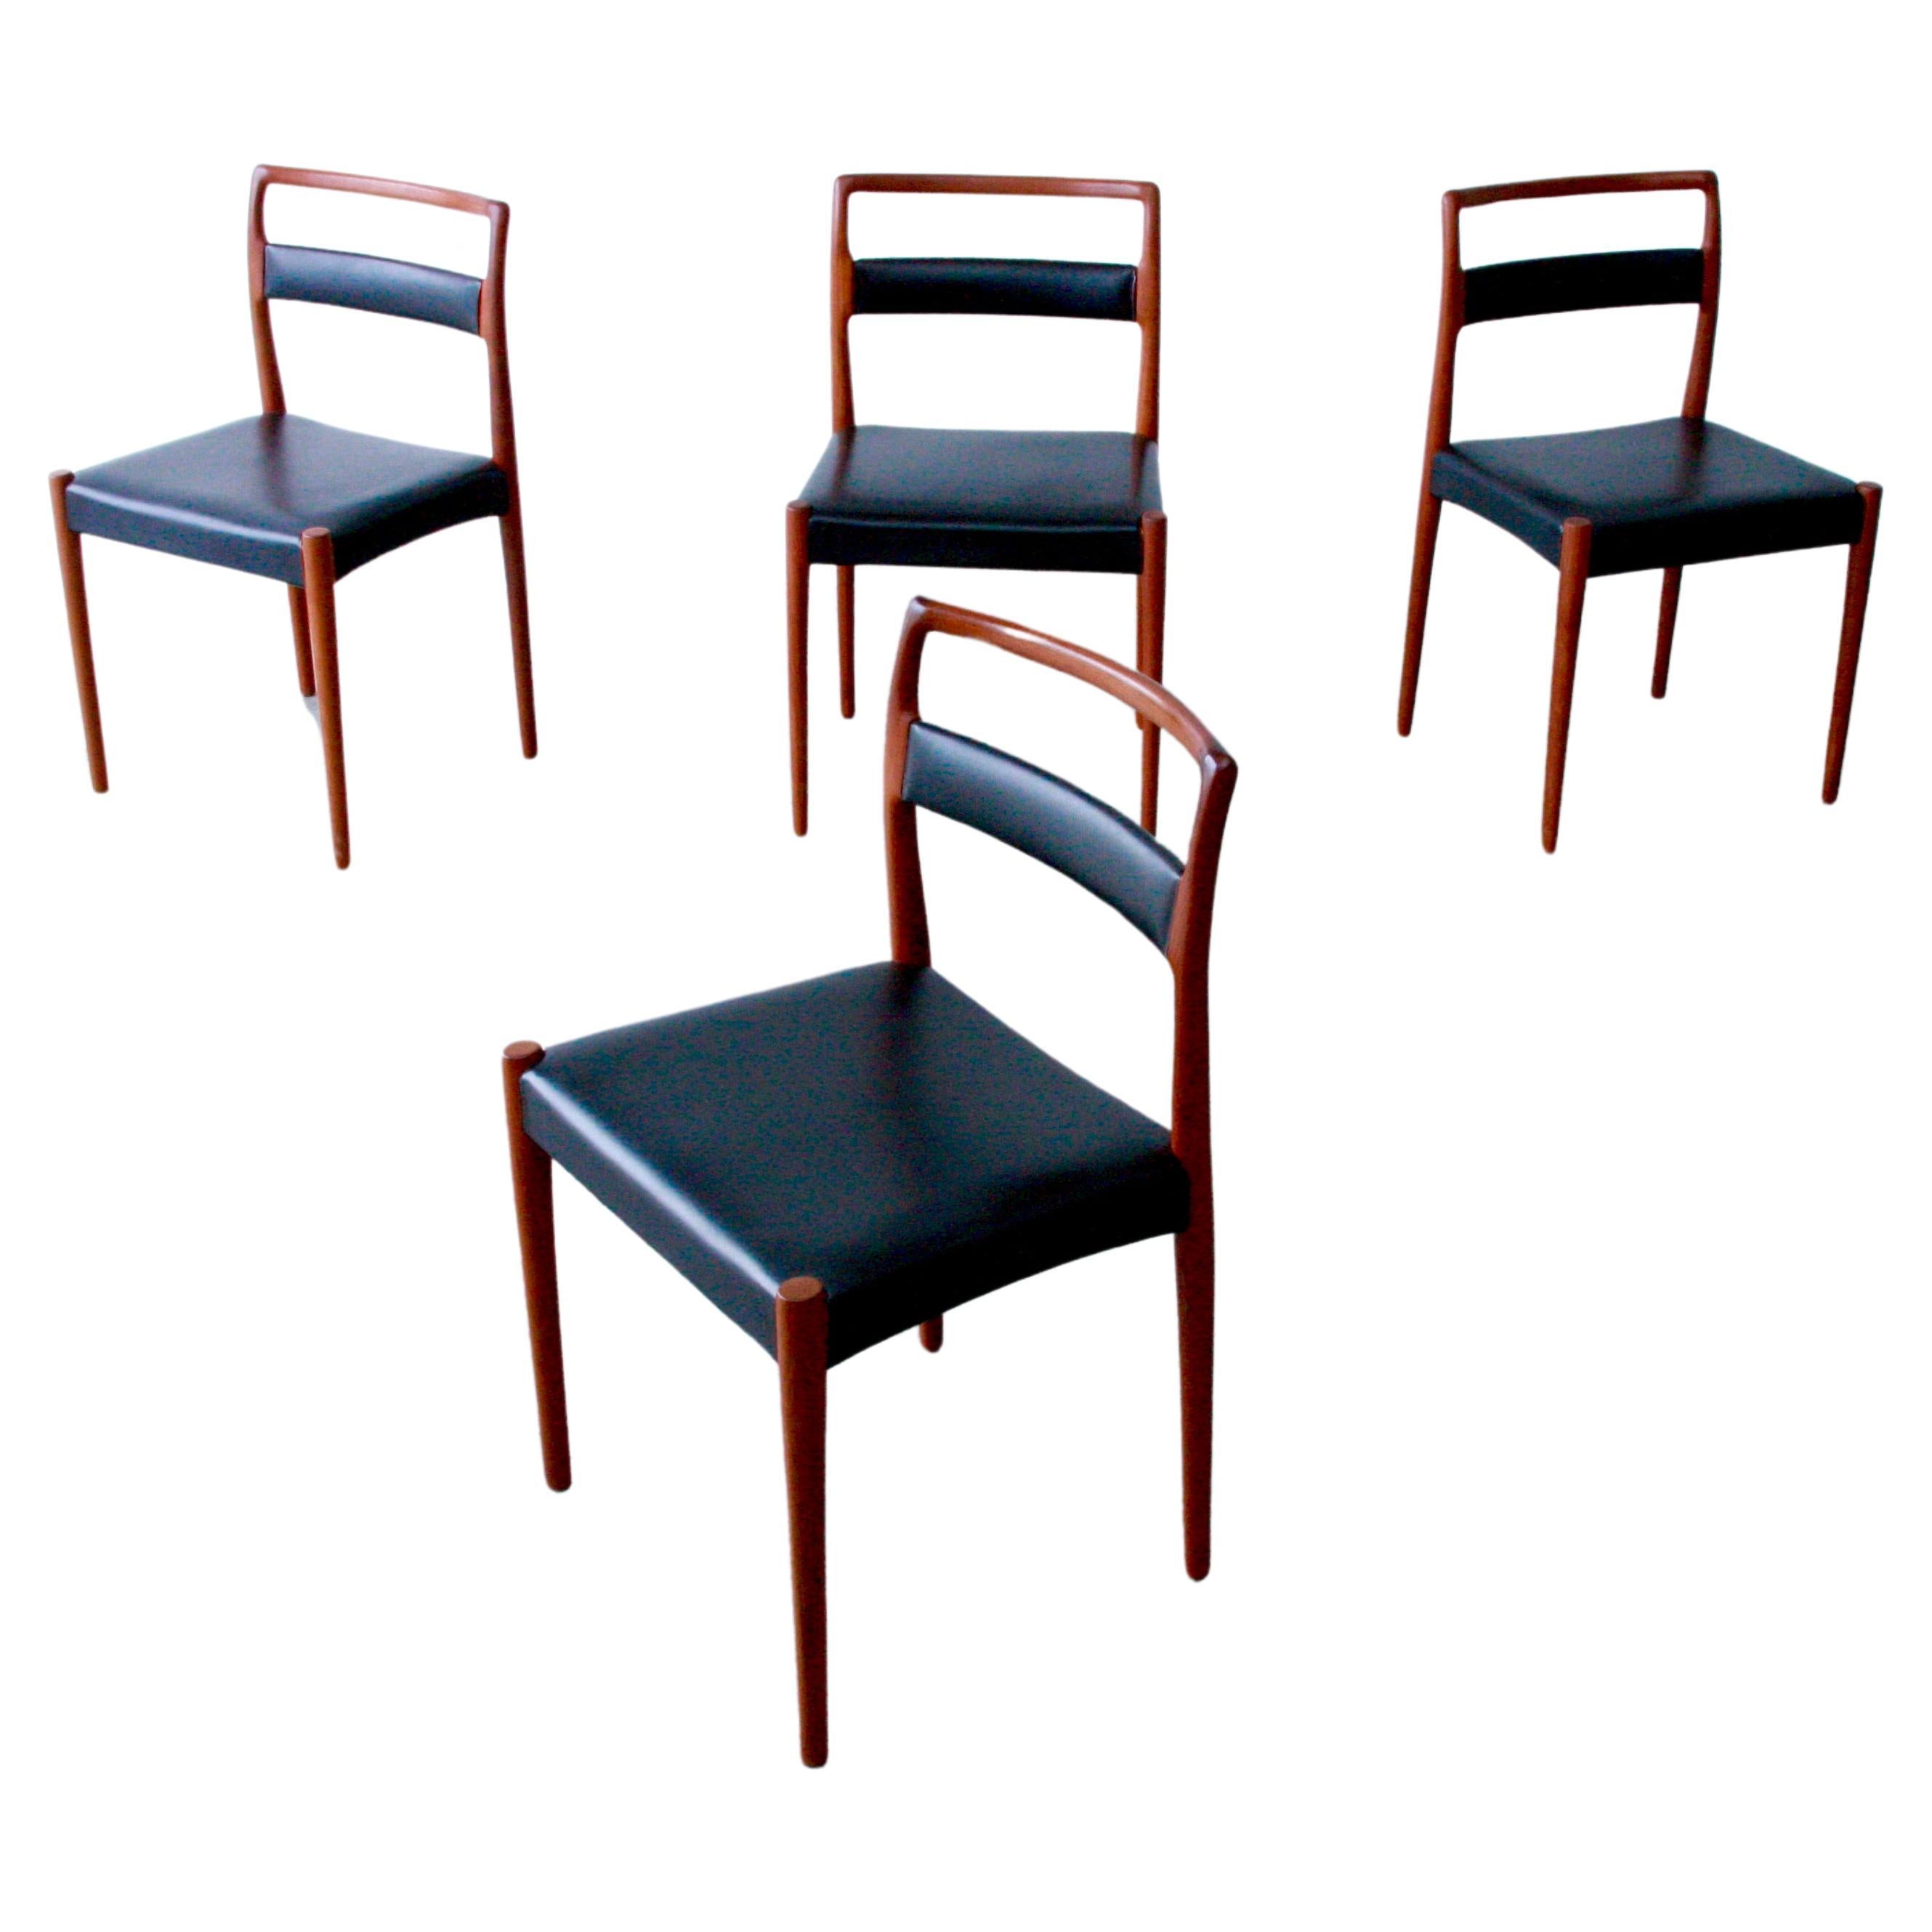 4 Danish Modern Kai Kristiansen for Oddense Maskinsnedkeri Dining Chairs